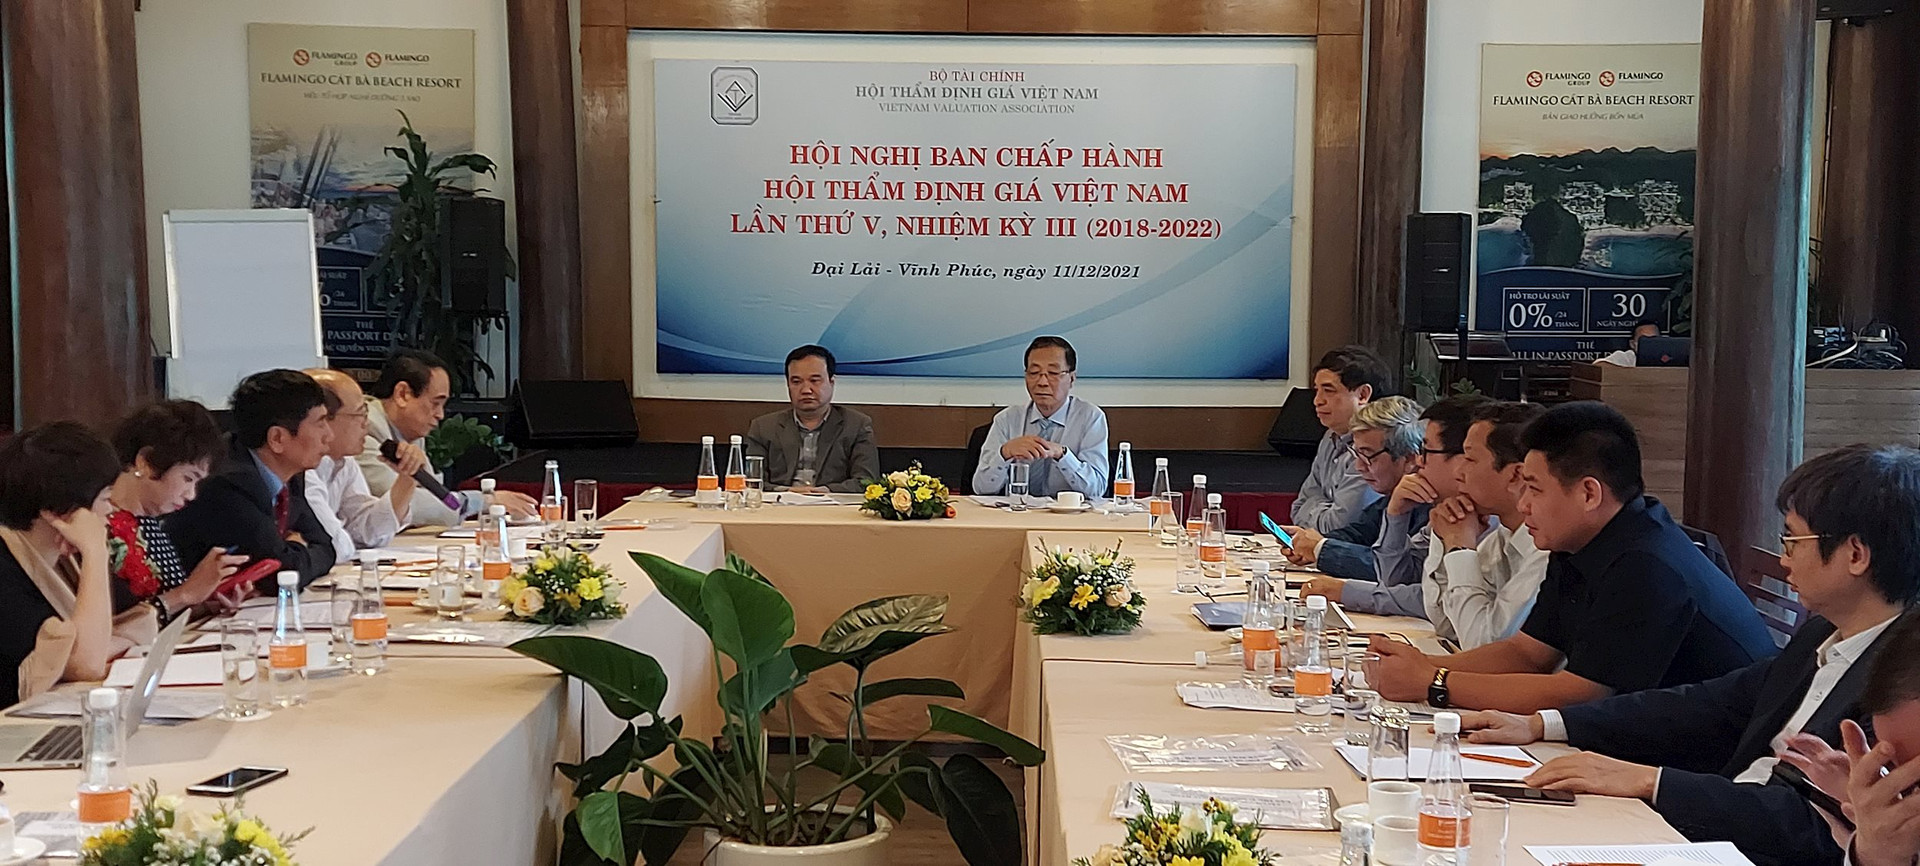 Hội Thẩm định giá Việt Nam: Ba thành công vượt trội trong năm 2021